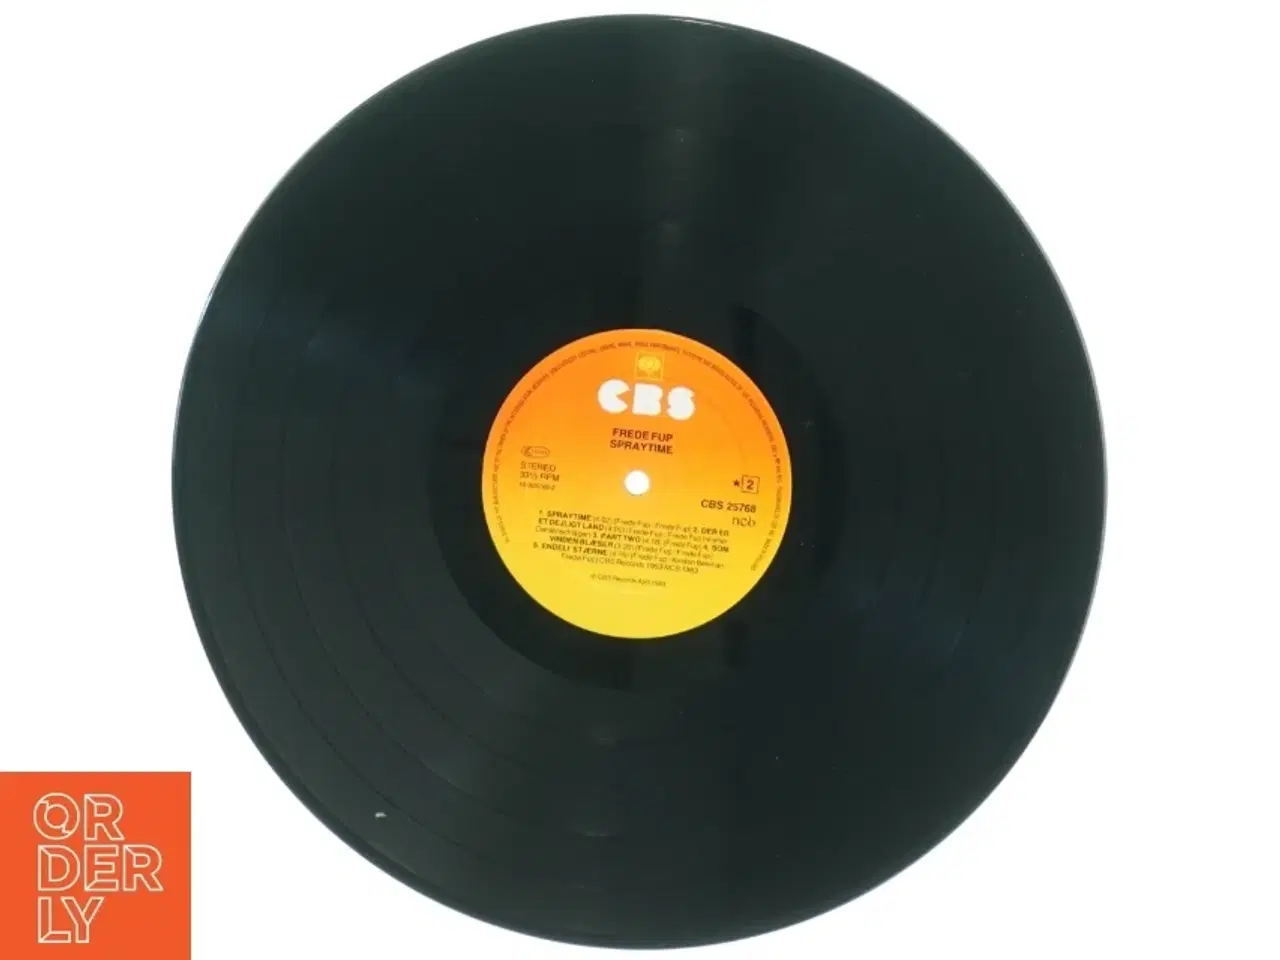 Billede 2 - Vinylplade med Frede Fup fra CBS (str. 31 x 31 cm)